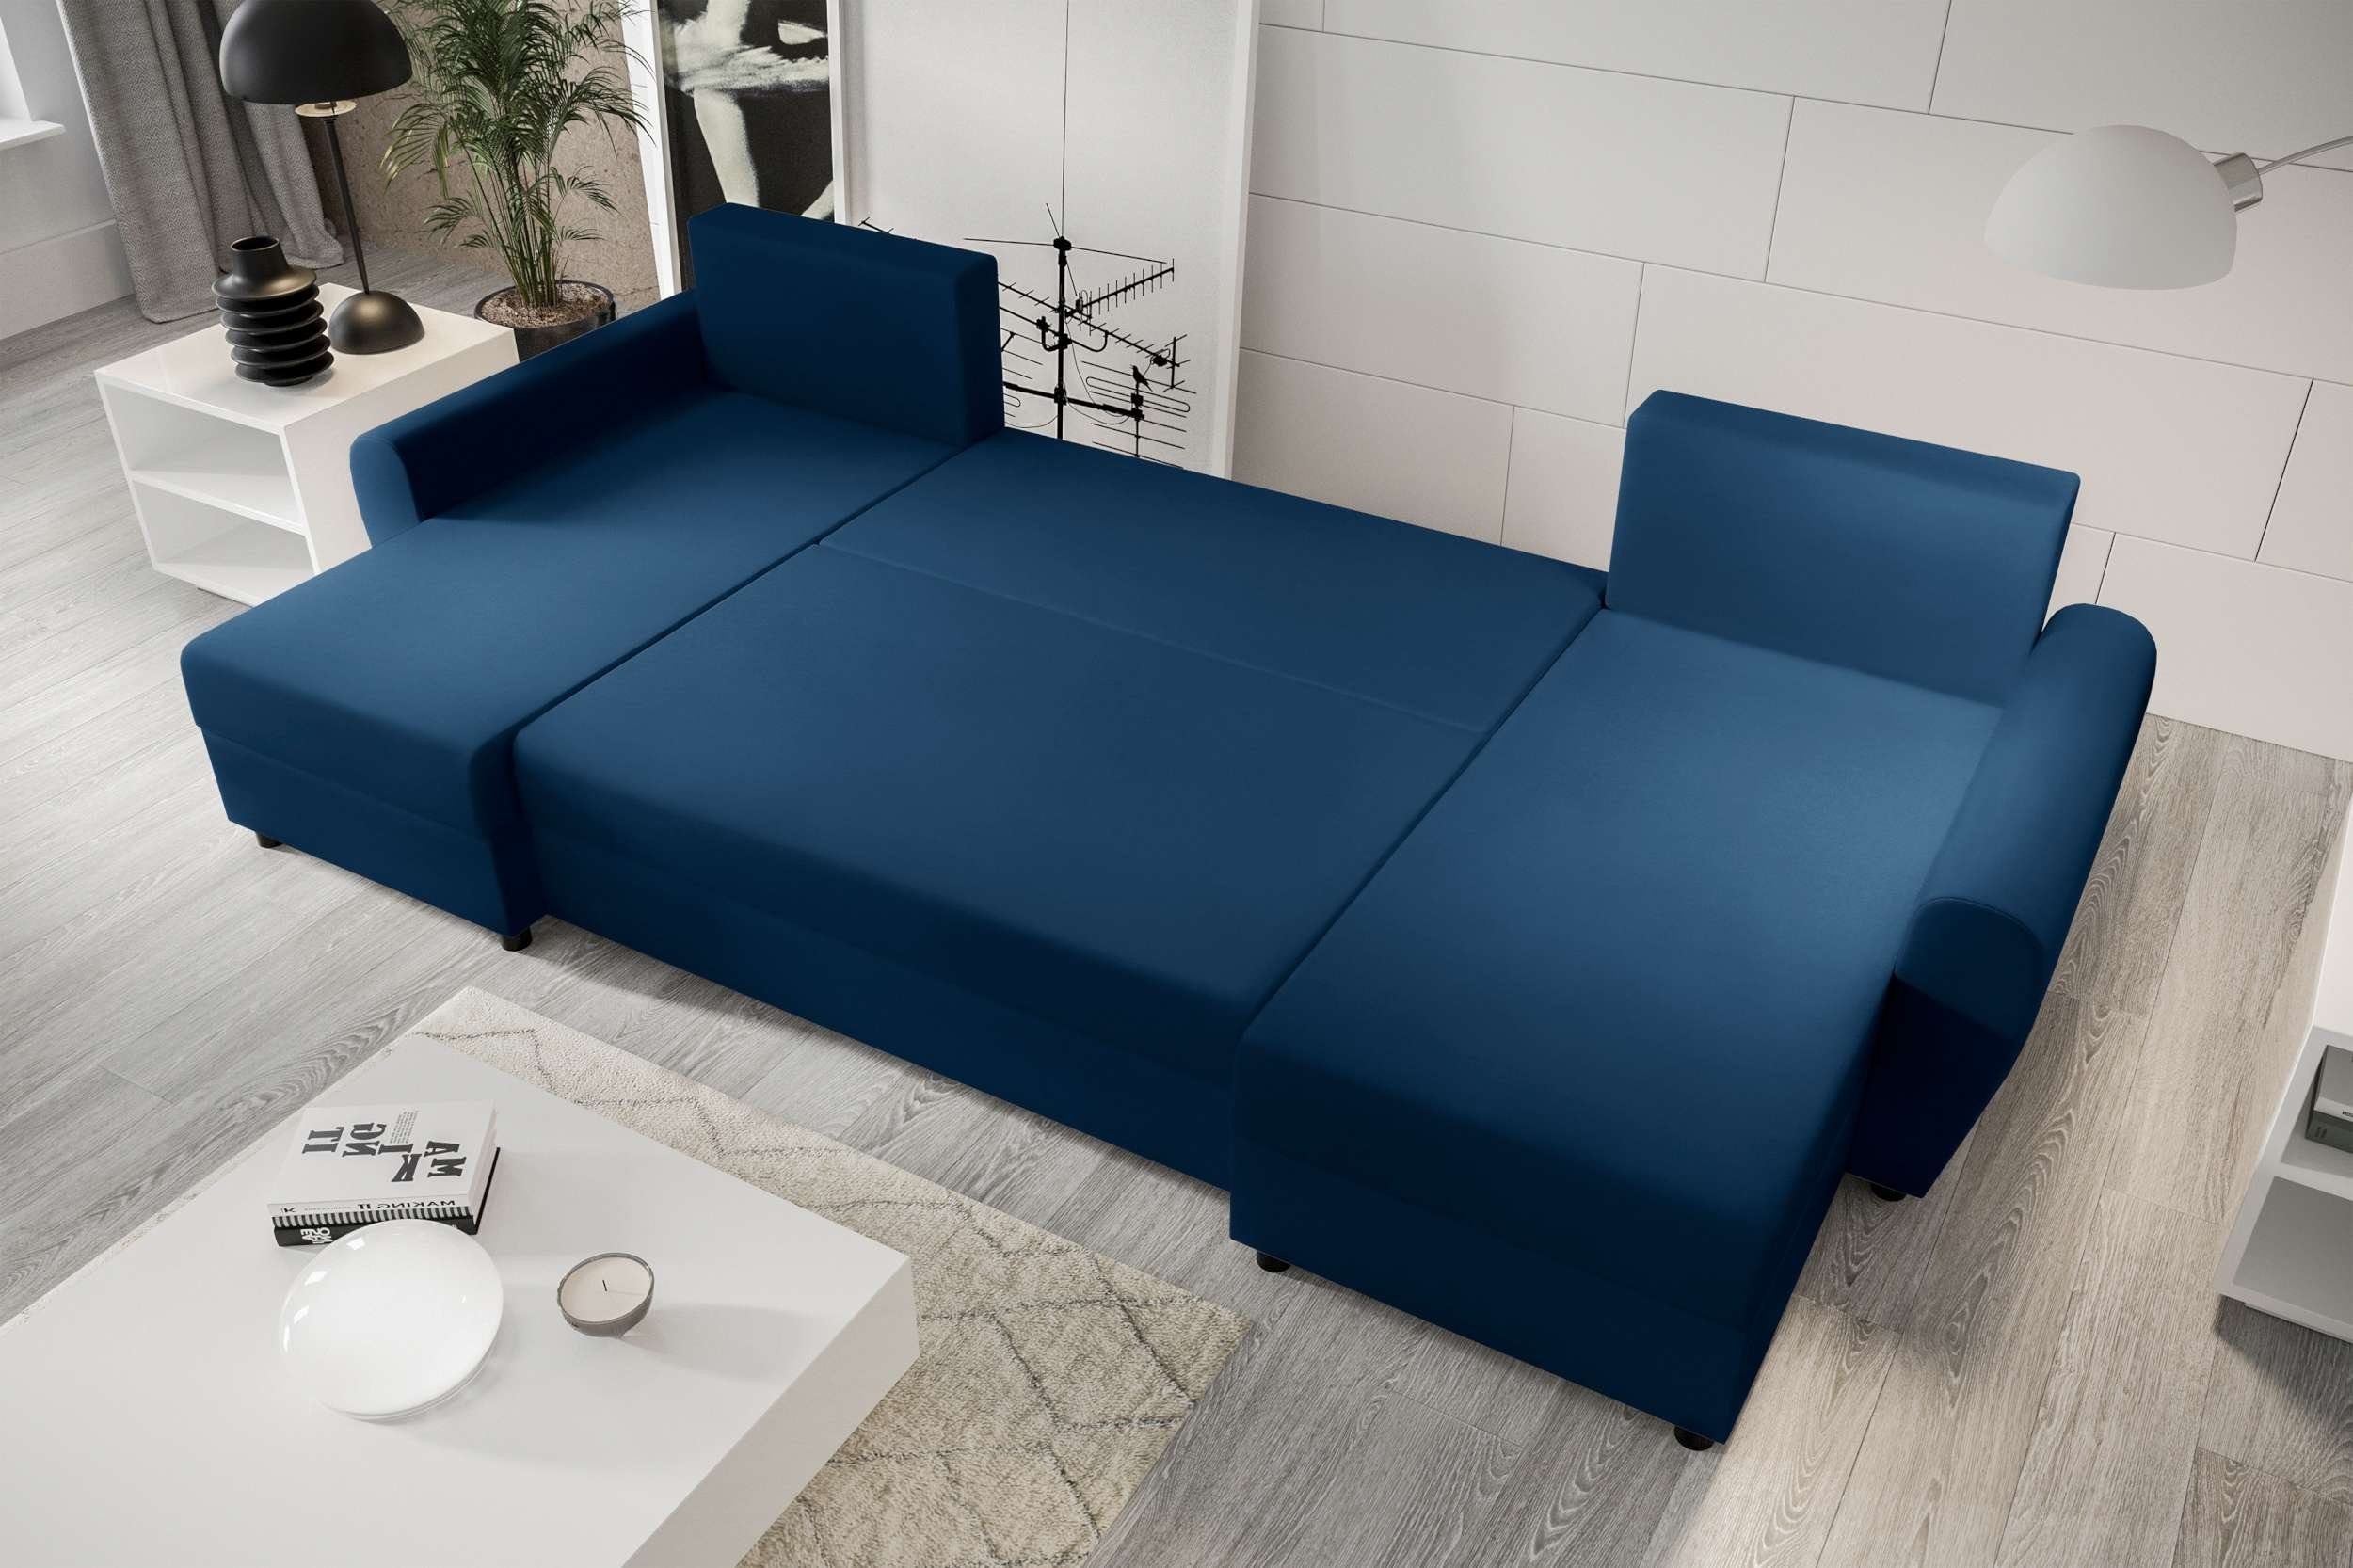 Stylefy Modern mit Sofa, Arlen, Bettfunktion, Design Eckcouch, Wohnlandschaft Sitzkomfort, Bettkasten, U-Form, mit